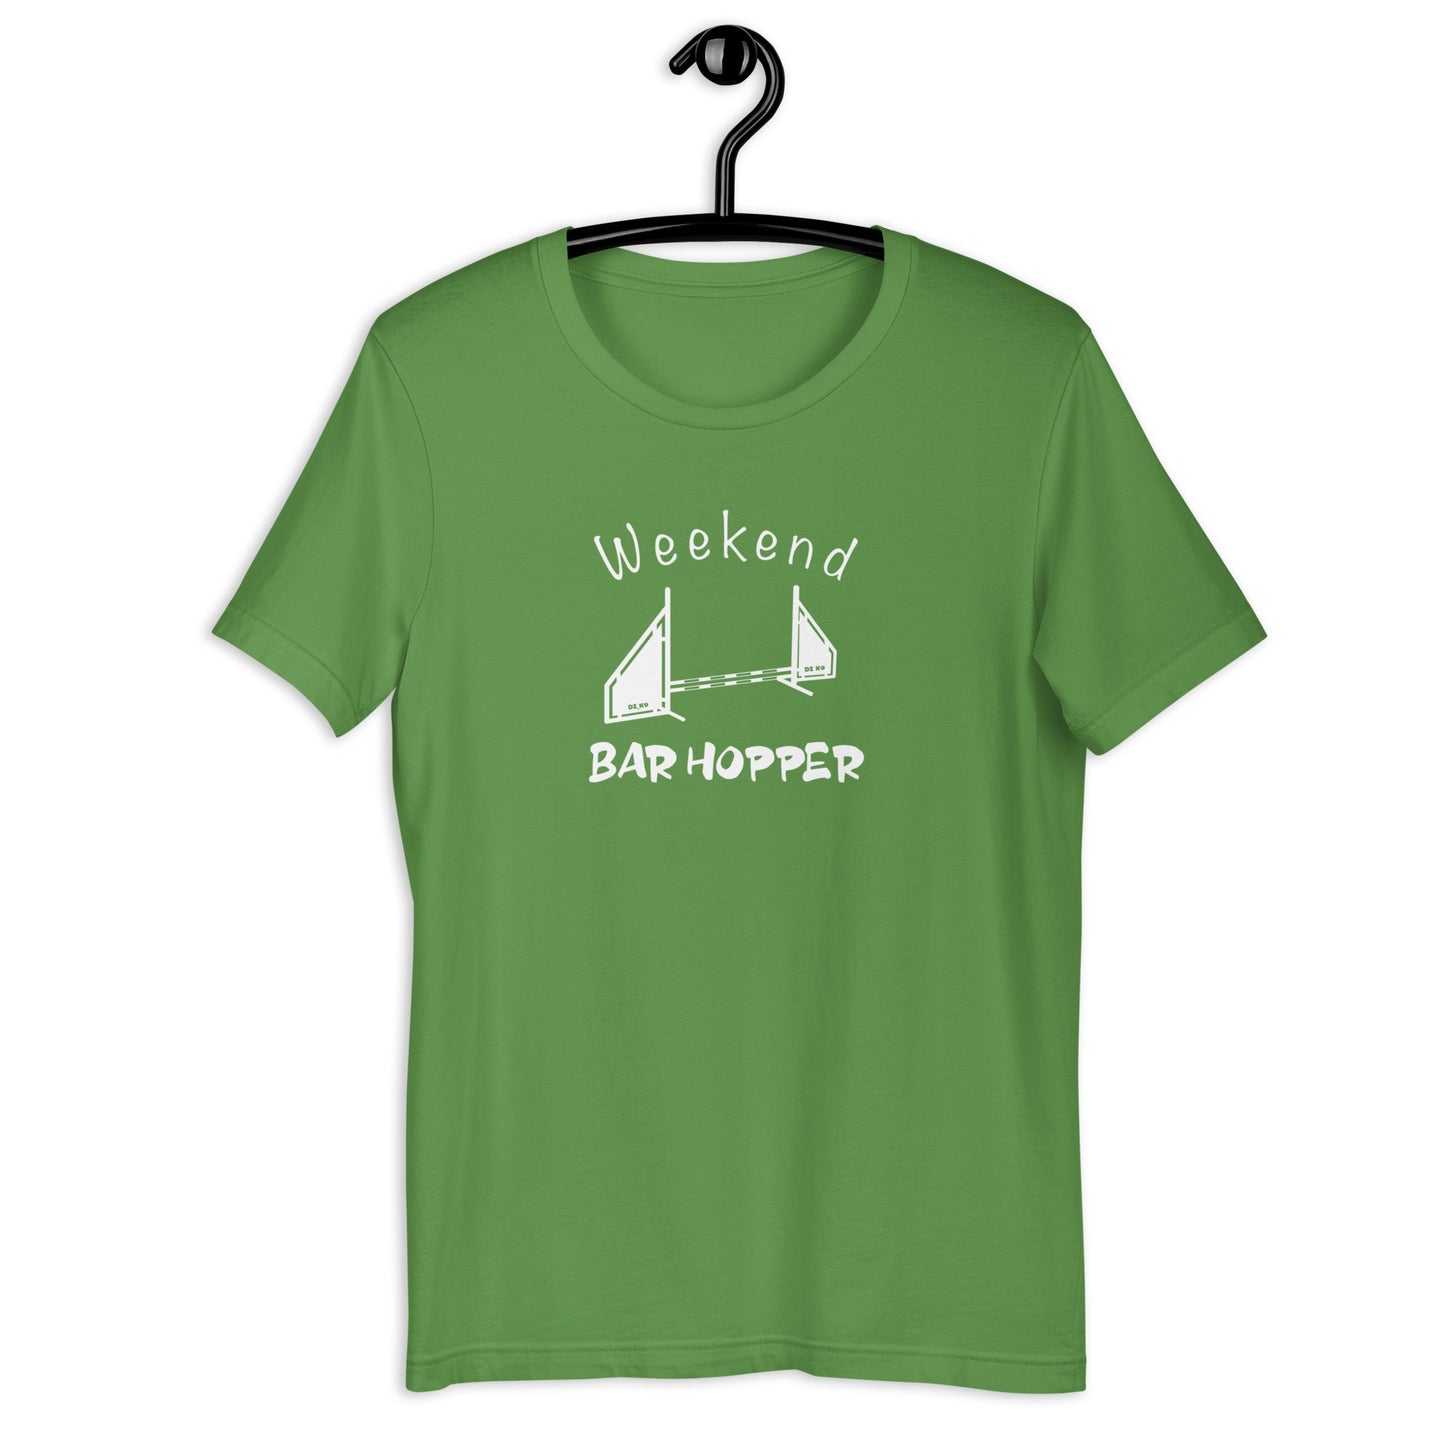 WEEKEND BAR HOPPER Unisex t-shirt